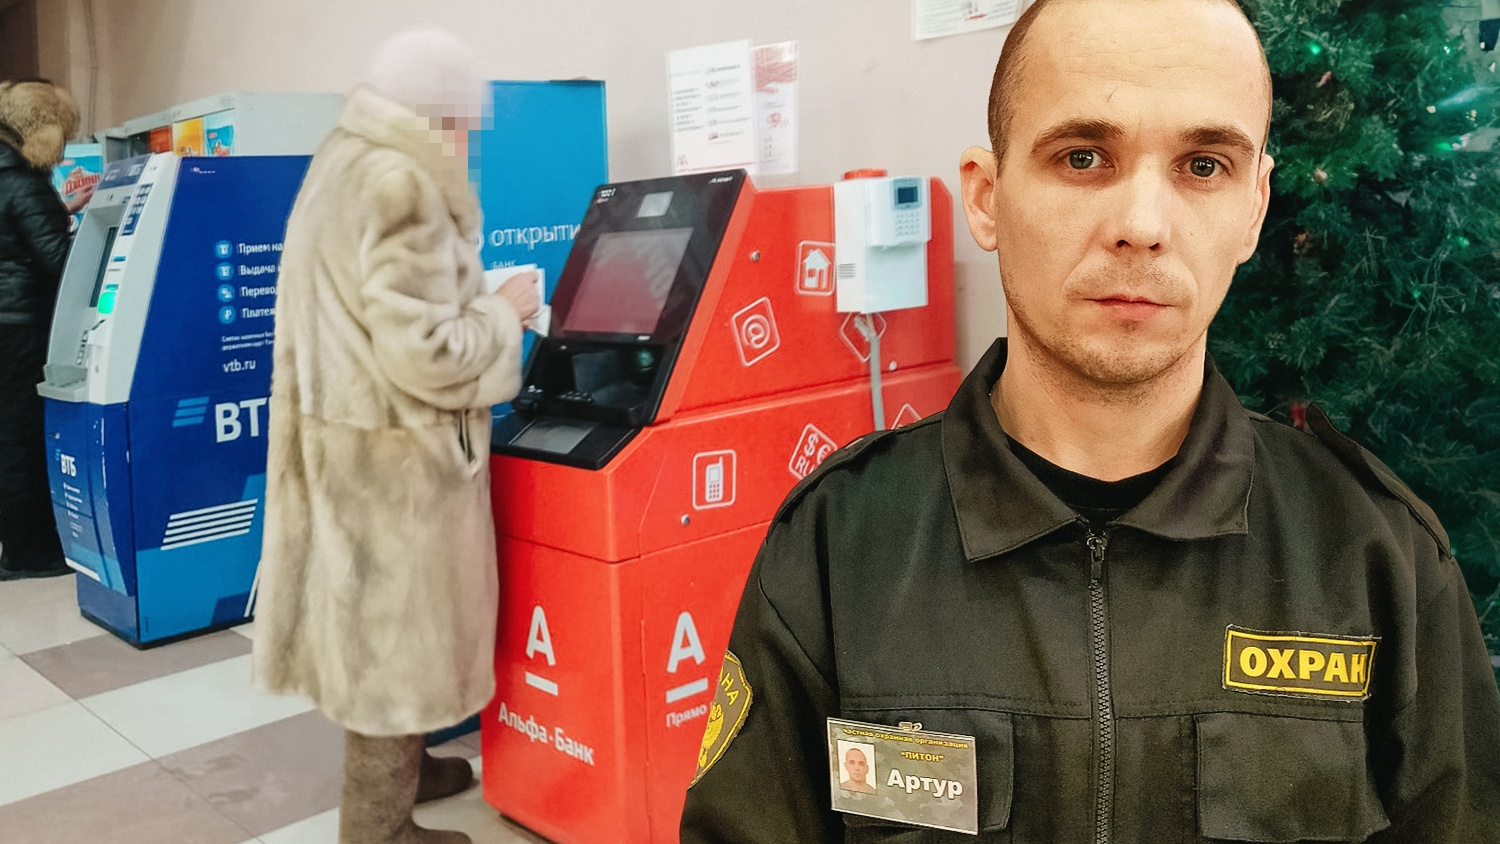 «Все деньги запихать в банкомат не успела»: охранник рассказал о мошенничестве, которое пытался предотвратить